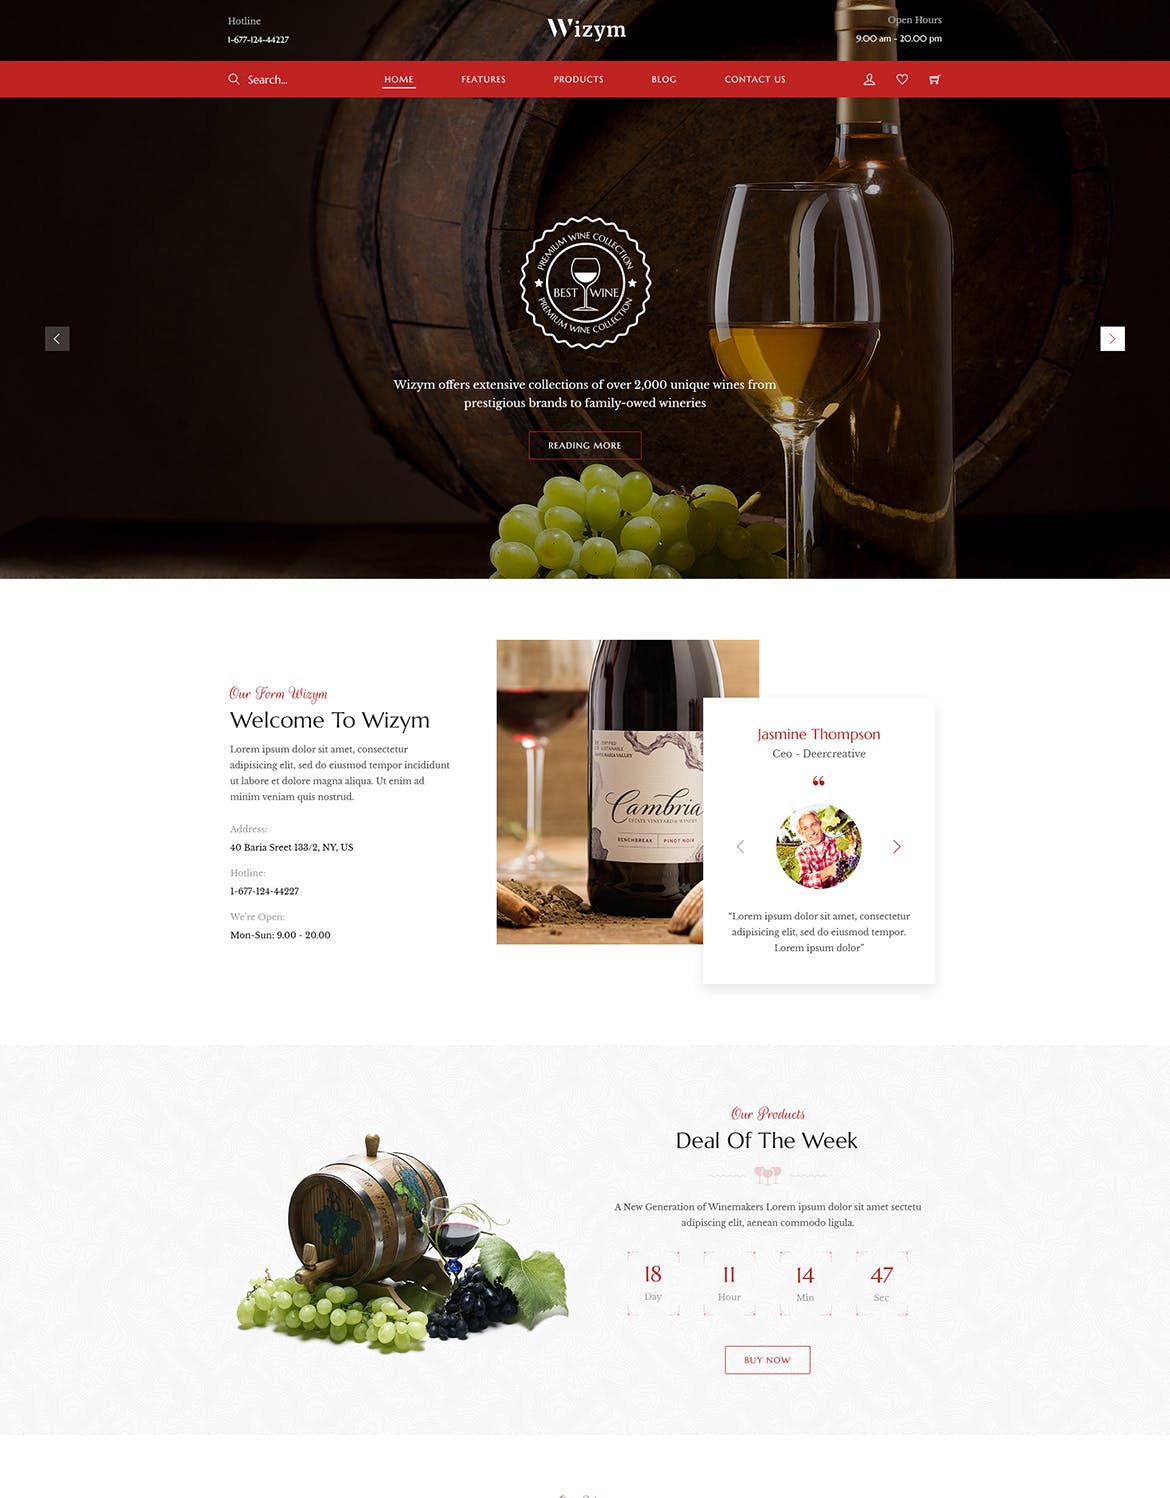 葡萄酒品牌网站设计PSD模板 Wizym | Wine & Winery PSD Template插图(2)